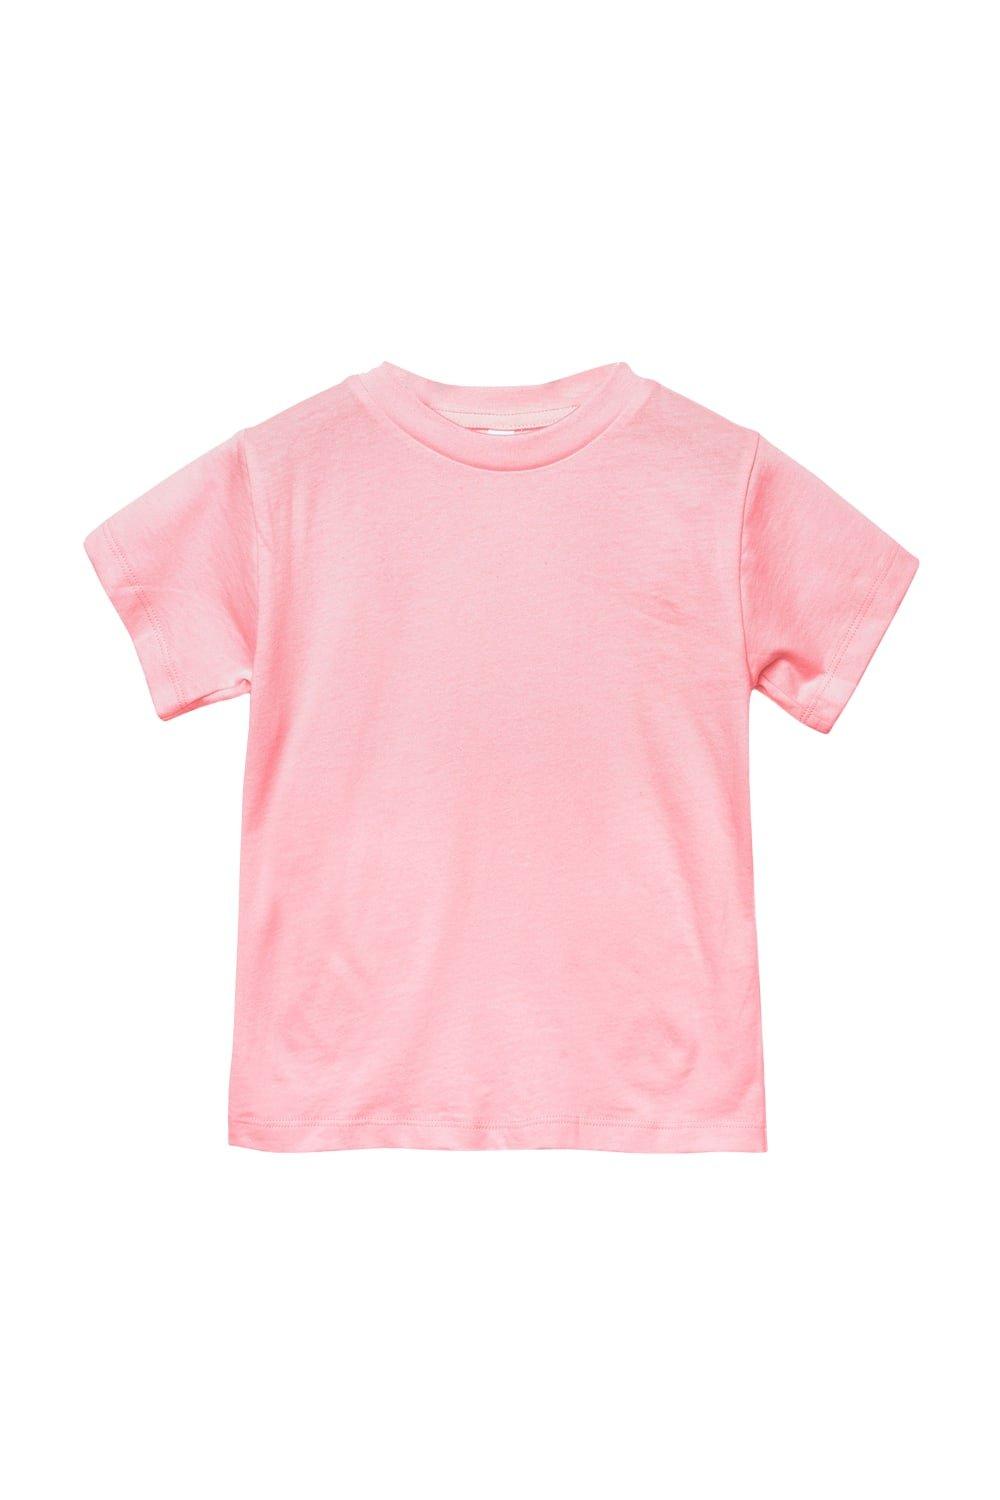 Футболка из джерси с коротким рукавом Bella + Canvas, розовый футболка из джерси с коротким рукавом bella canvas коричневый